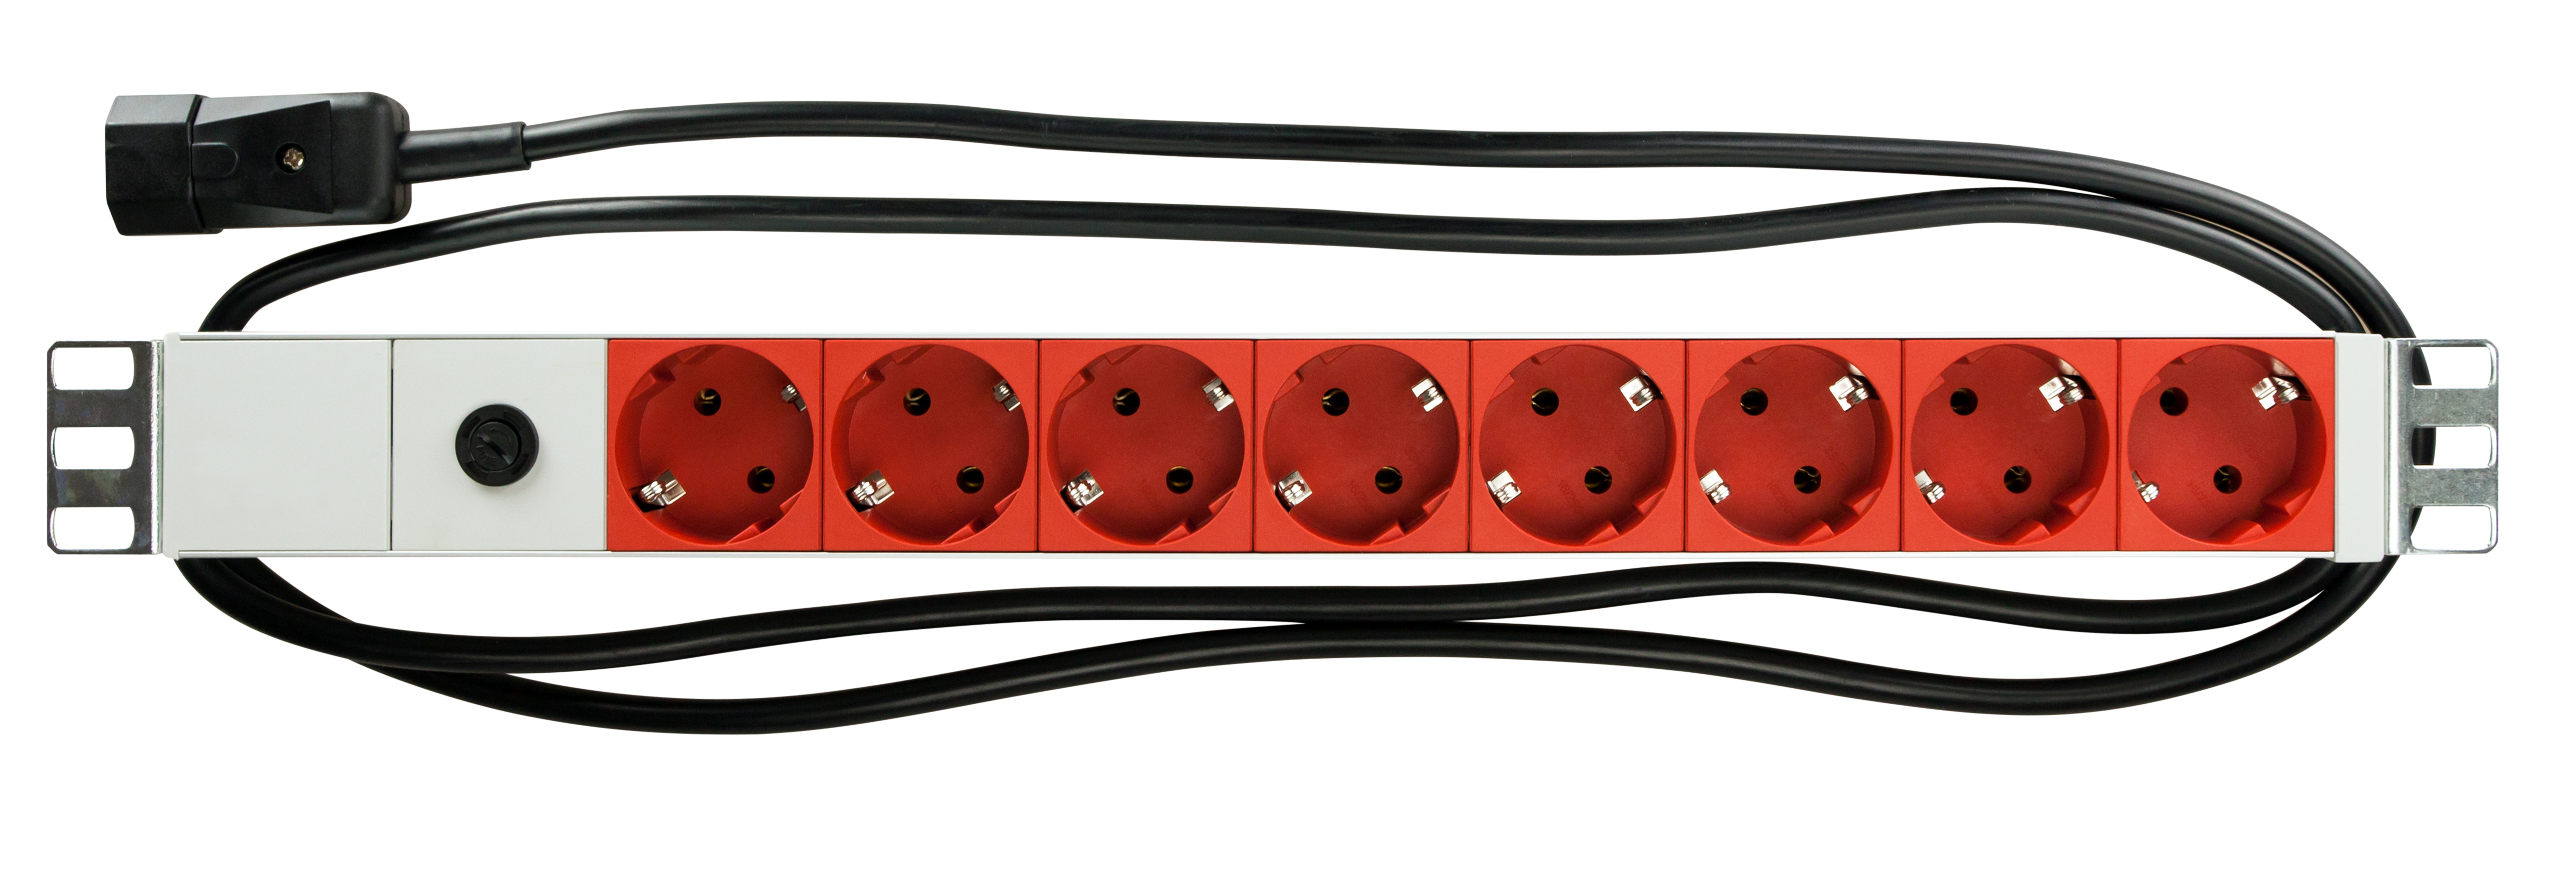 Foto: 19" Netzleiste für USV, 8xSchuko Rot, 2m-Kabel mit C14 (c) Schrack